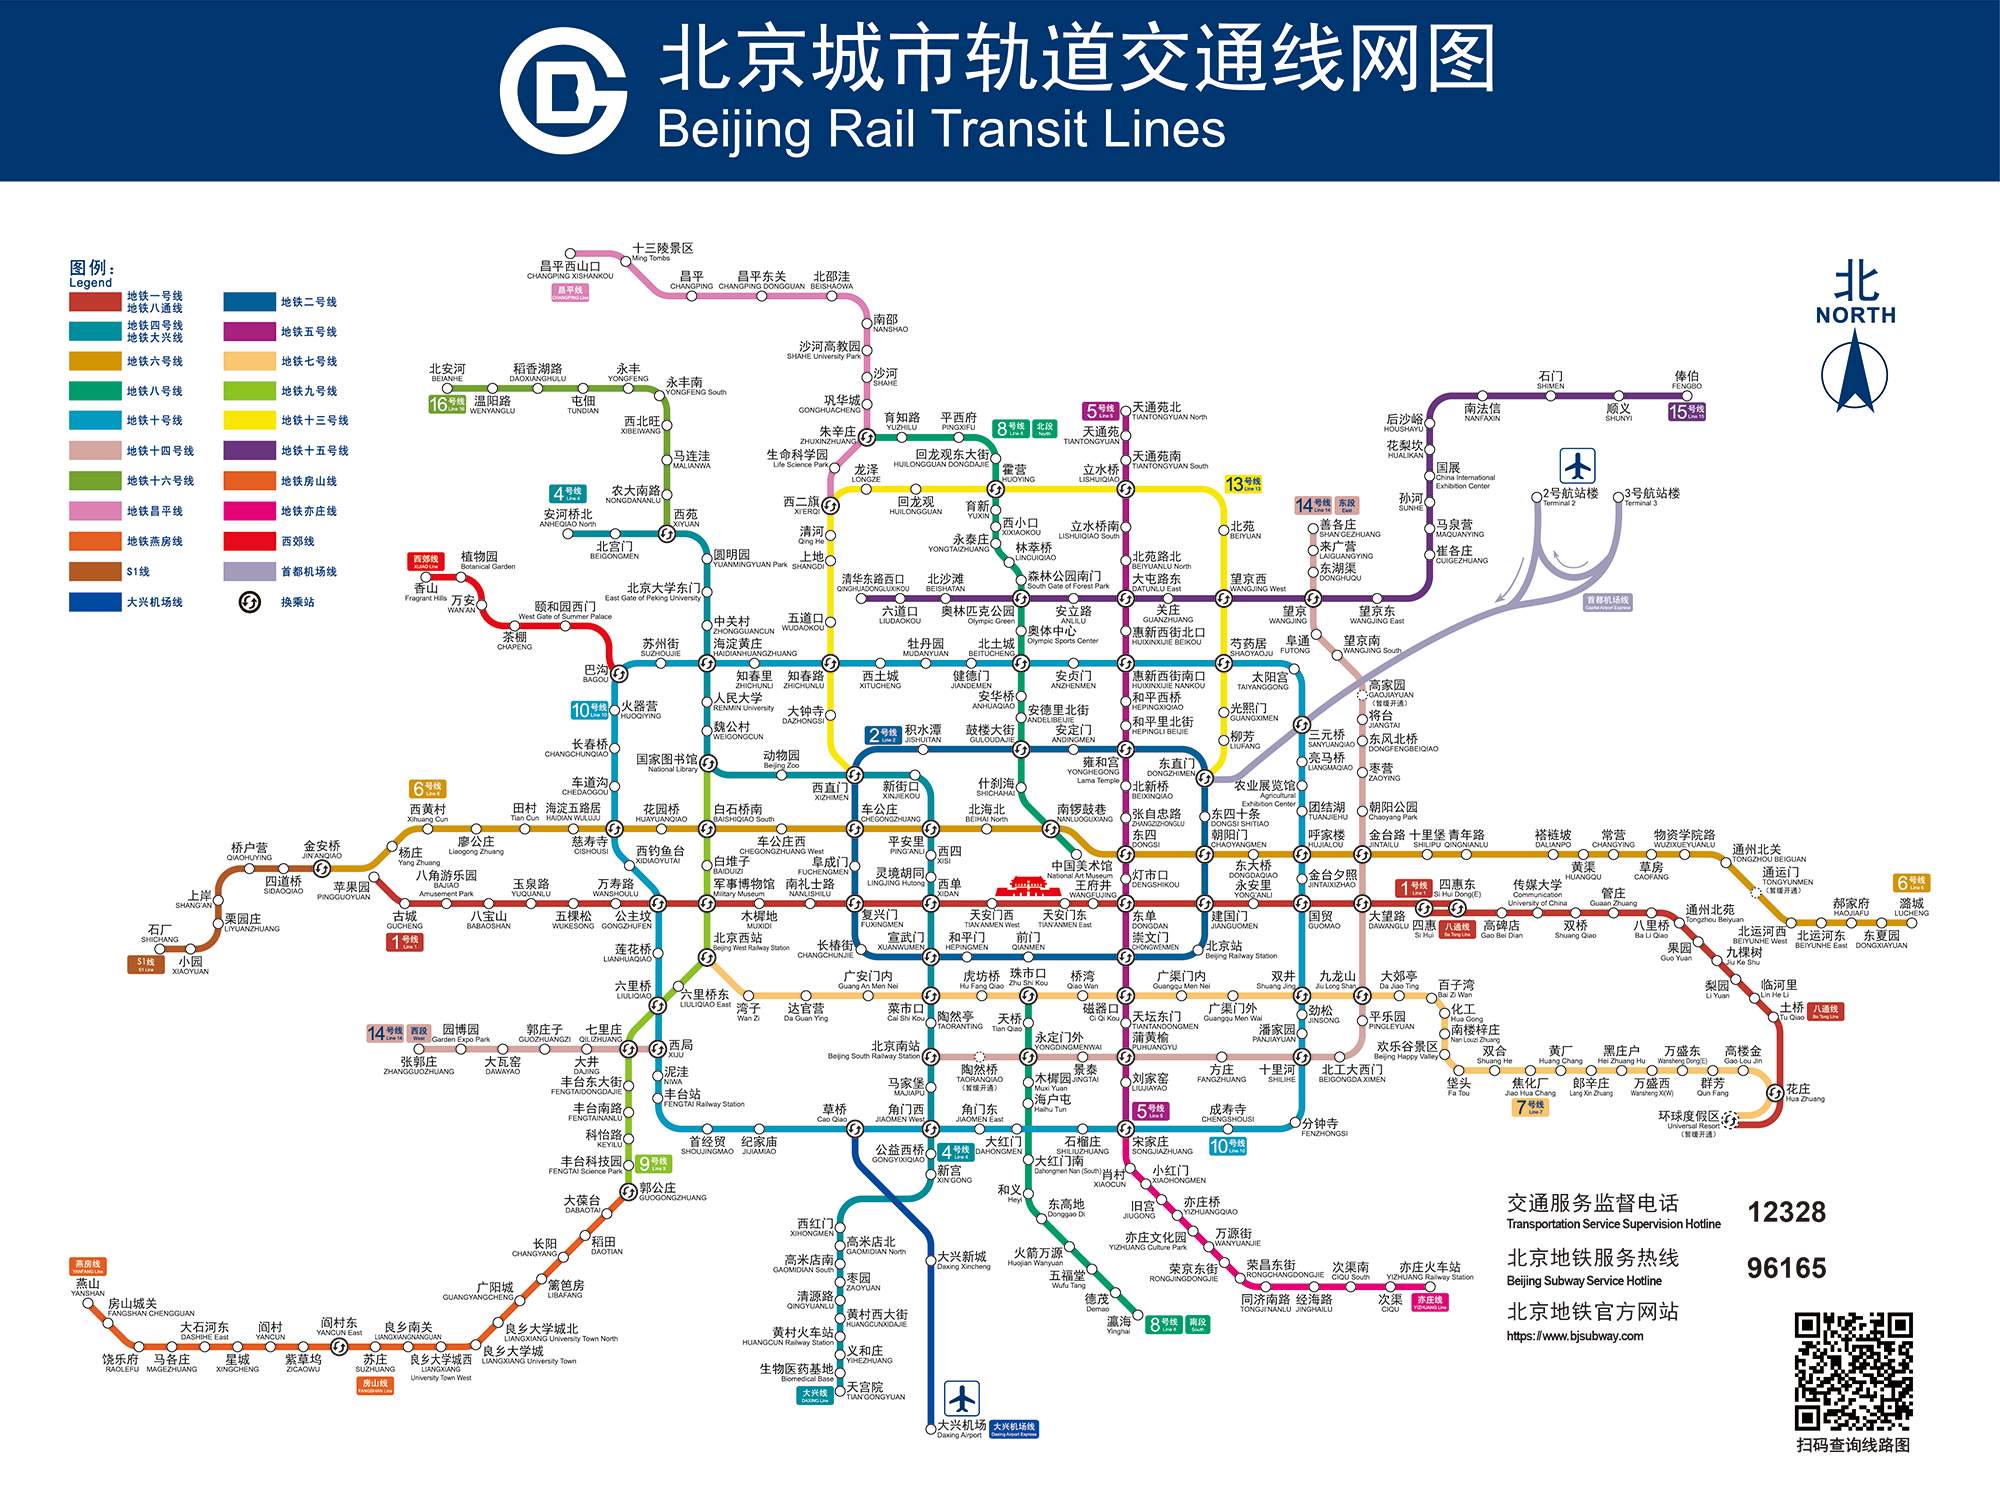 お役立ち情報ー『北京の交通機関について①／地下鉄』掲載しました。 